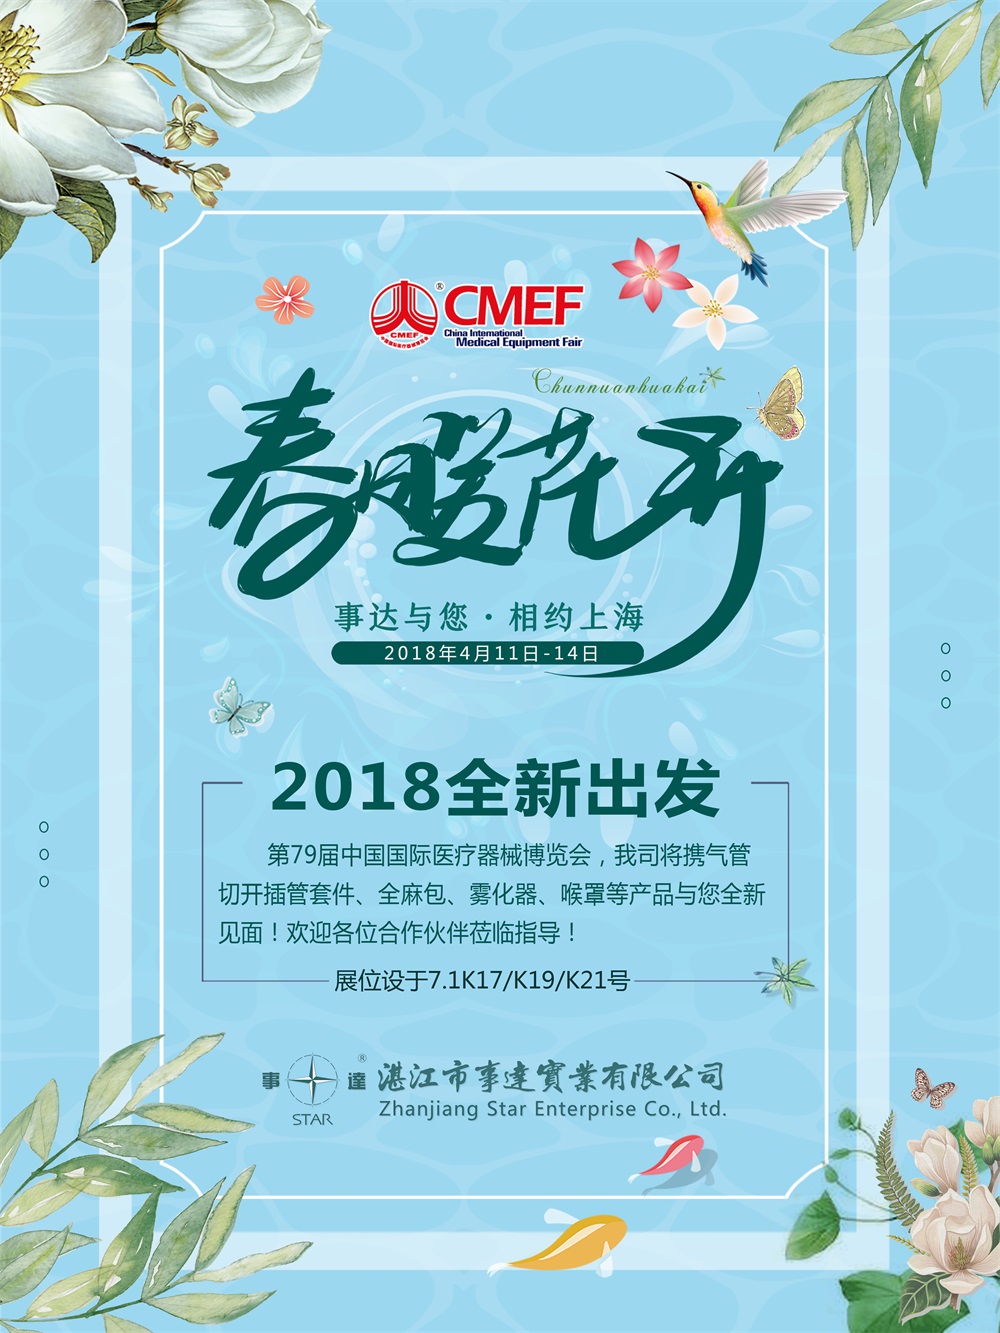 歡迎參觀2018年第79屆中國國際醫療器械（春季）博覽會